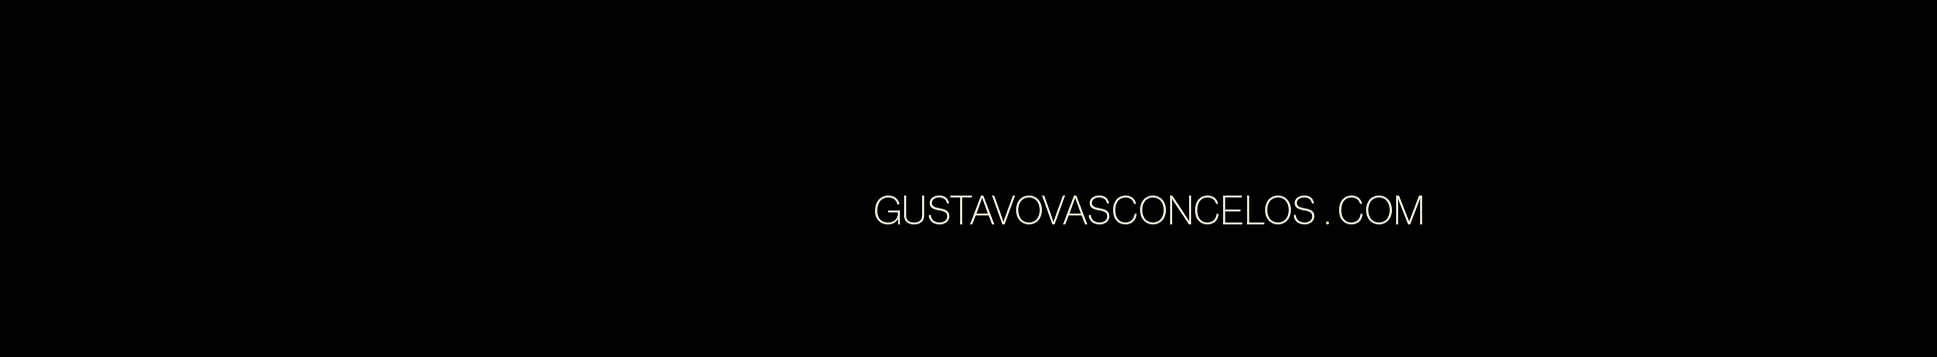 Gustavo Vasconceloss profilbanner